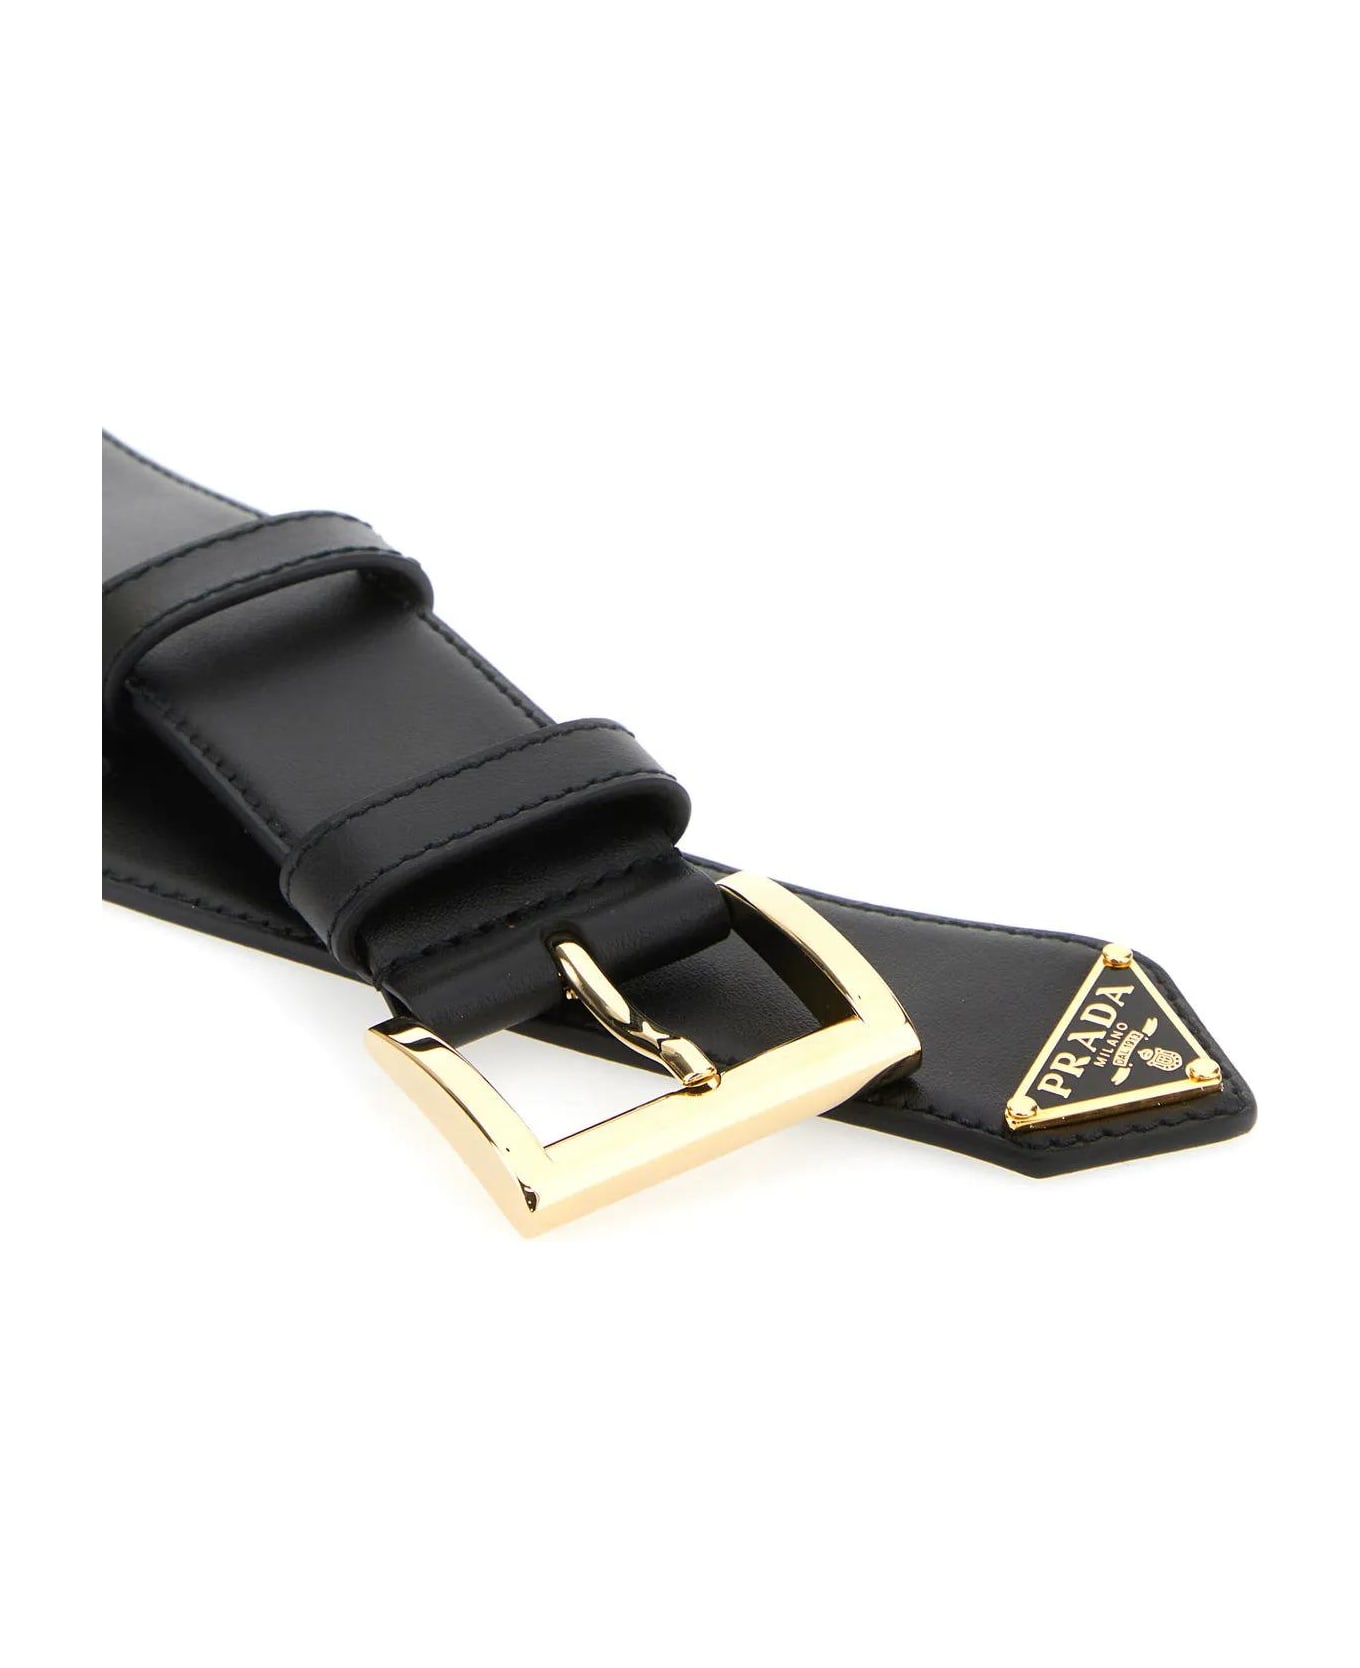 Prada Black Leather Belt - Nero 1